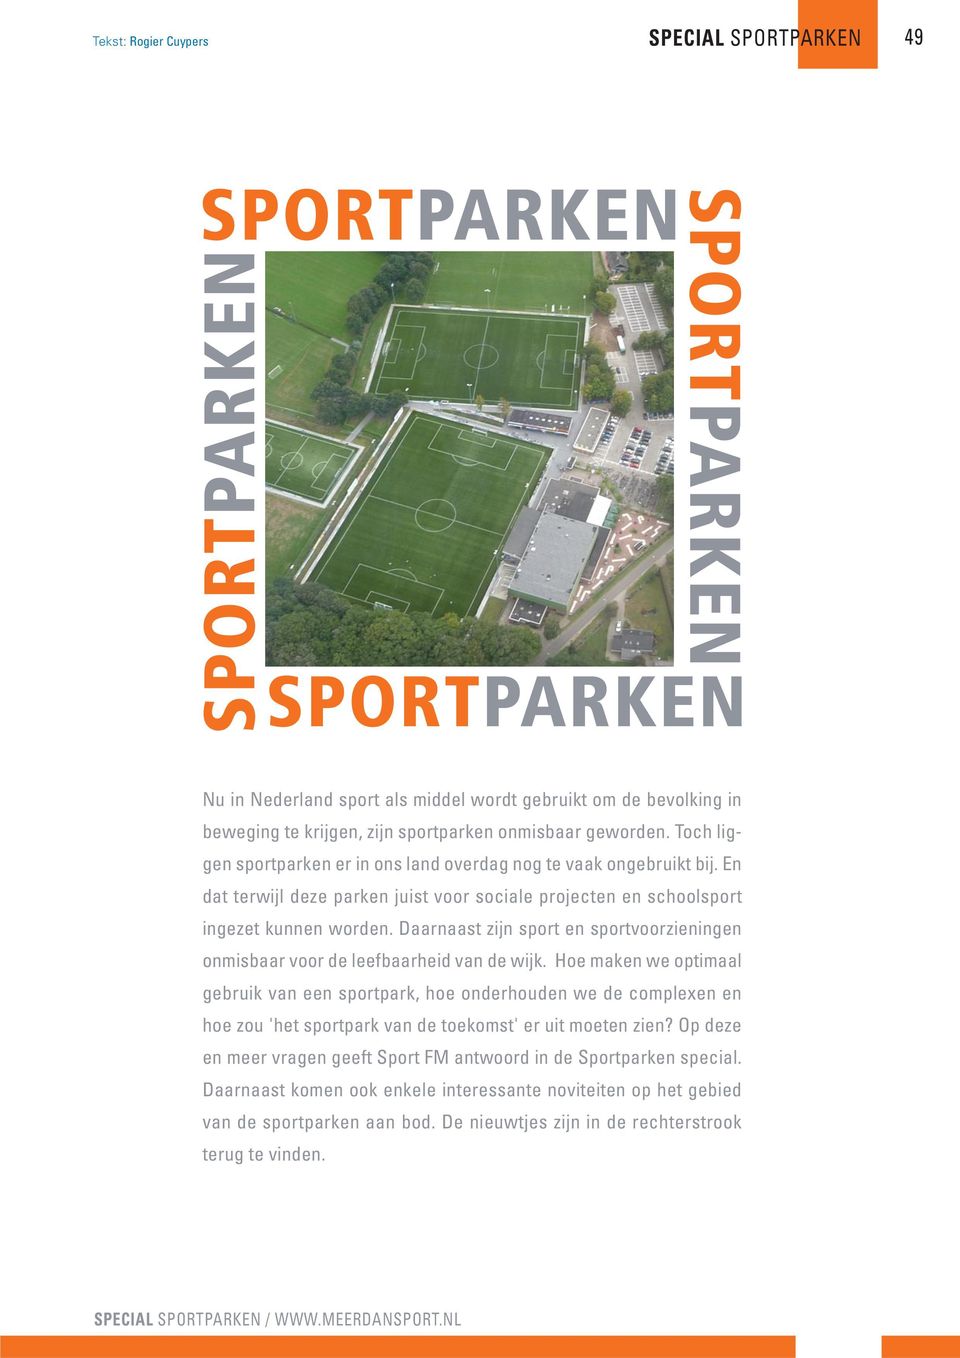 Daarnaast zijn sport en sportvoorzieningen onmisbaar voor de leefbaarheid van de wijk.